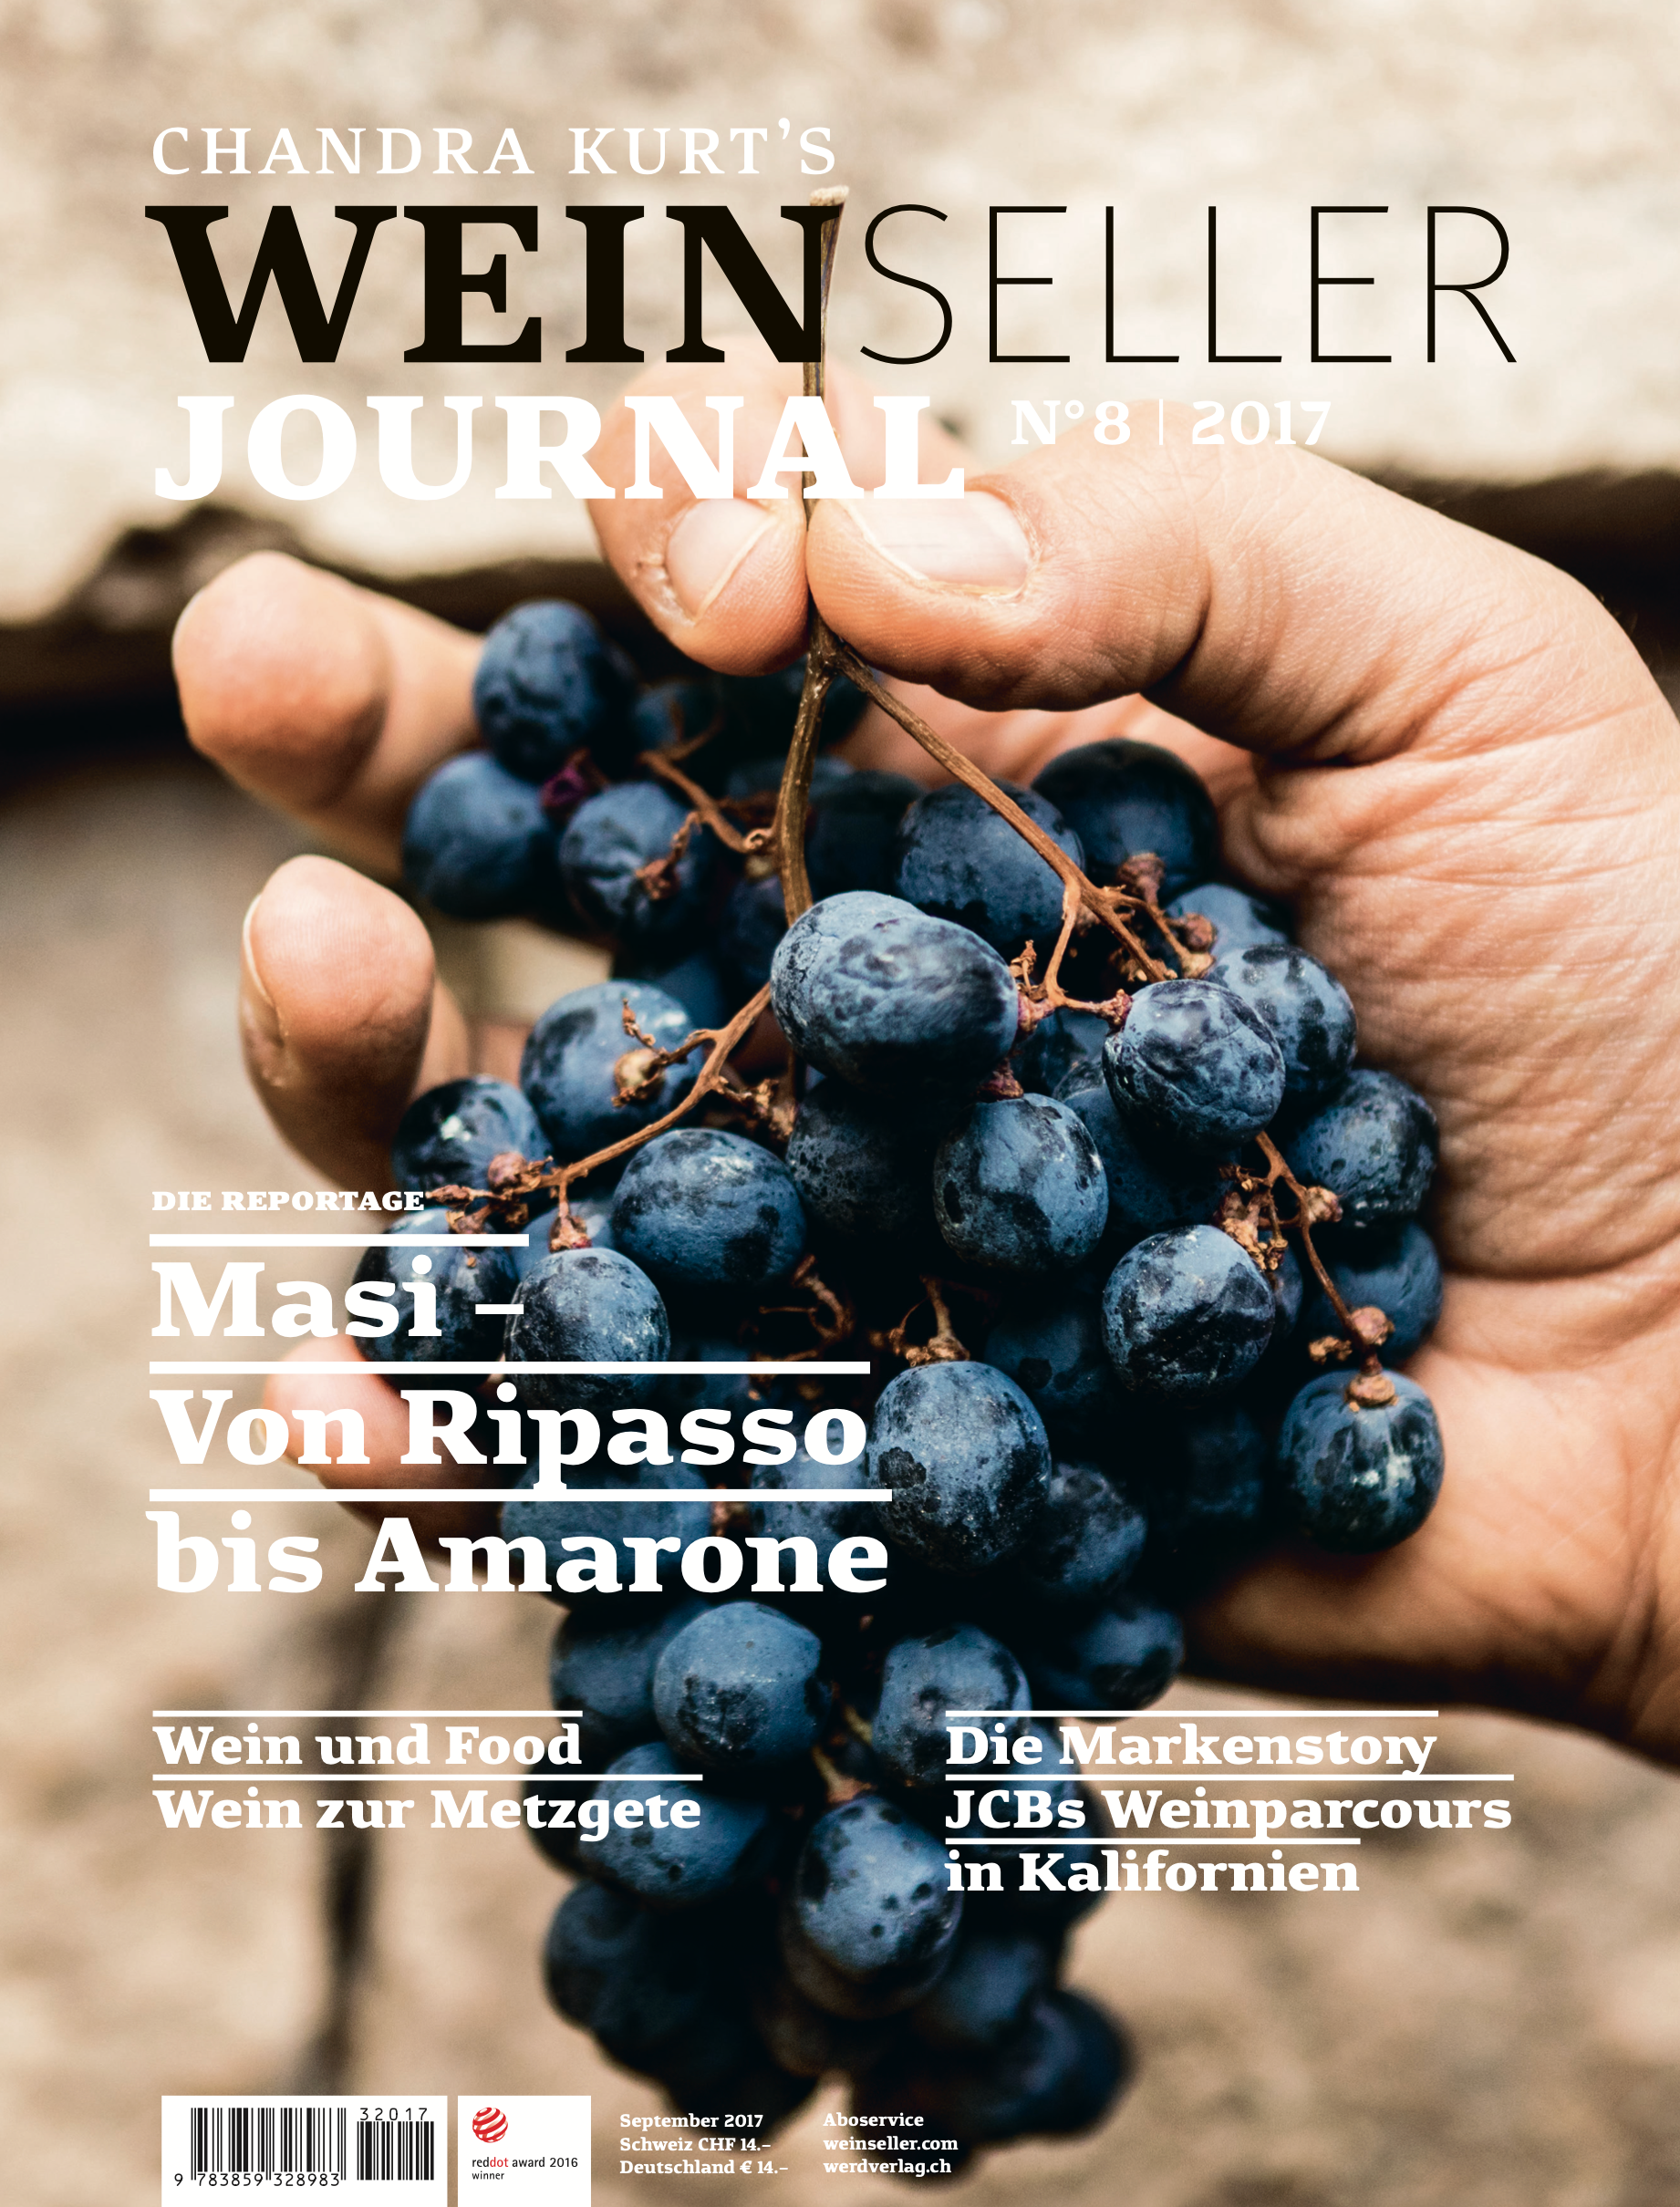 Weinseller Journal 08/17 - WEBER VERLAG